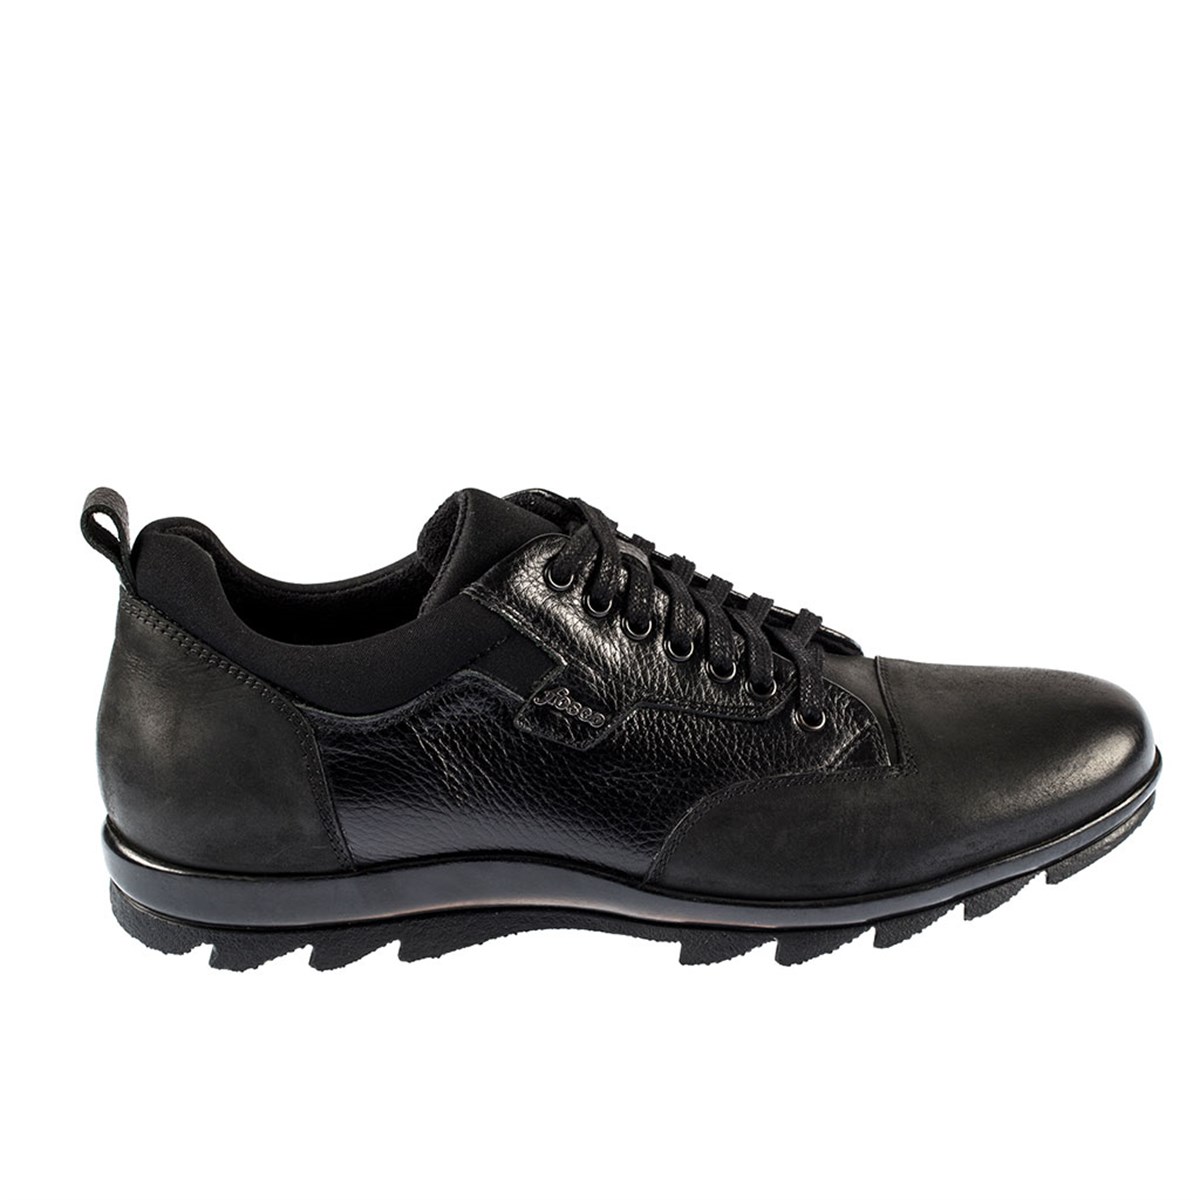 Bağcıklı Siyah Hakiki Deri Kauçuk Taban Sıcak Astar Kışlık Erkek Ayakkabı  9510 636 551 - Fosco